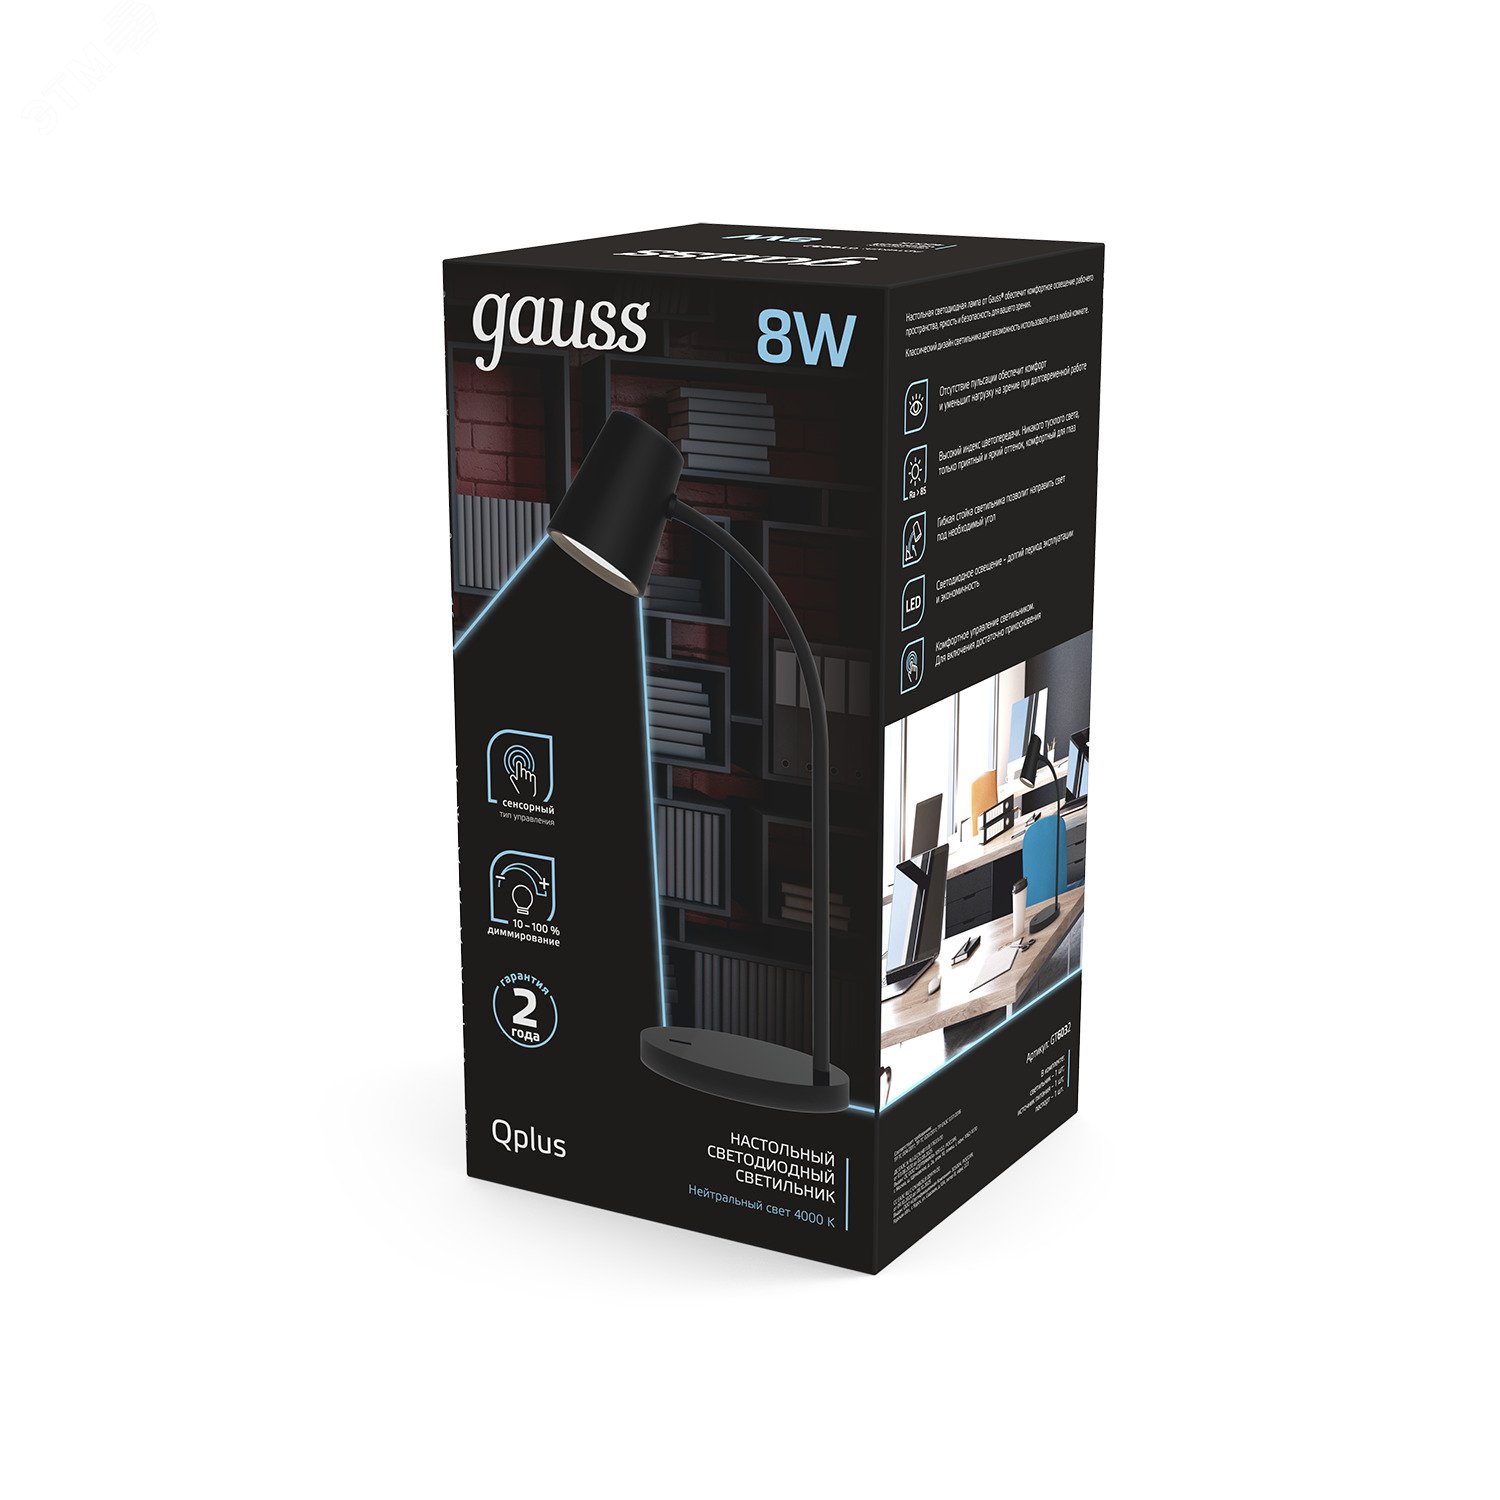 Светильник настольный светодиодный LED 8 Вт 600 Лм 4000К модель GTL603 черный диммируемый Qplus Gauss GT6032 GAUSS - превью 5